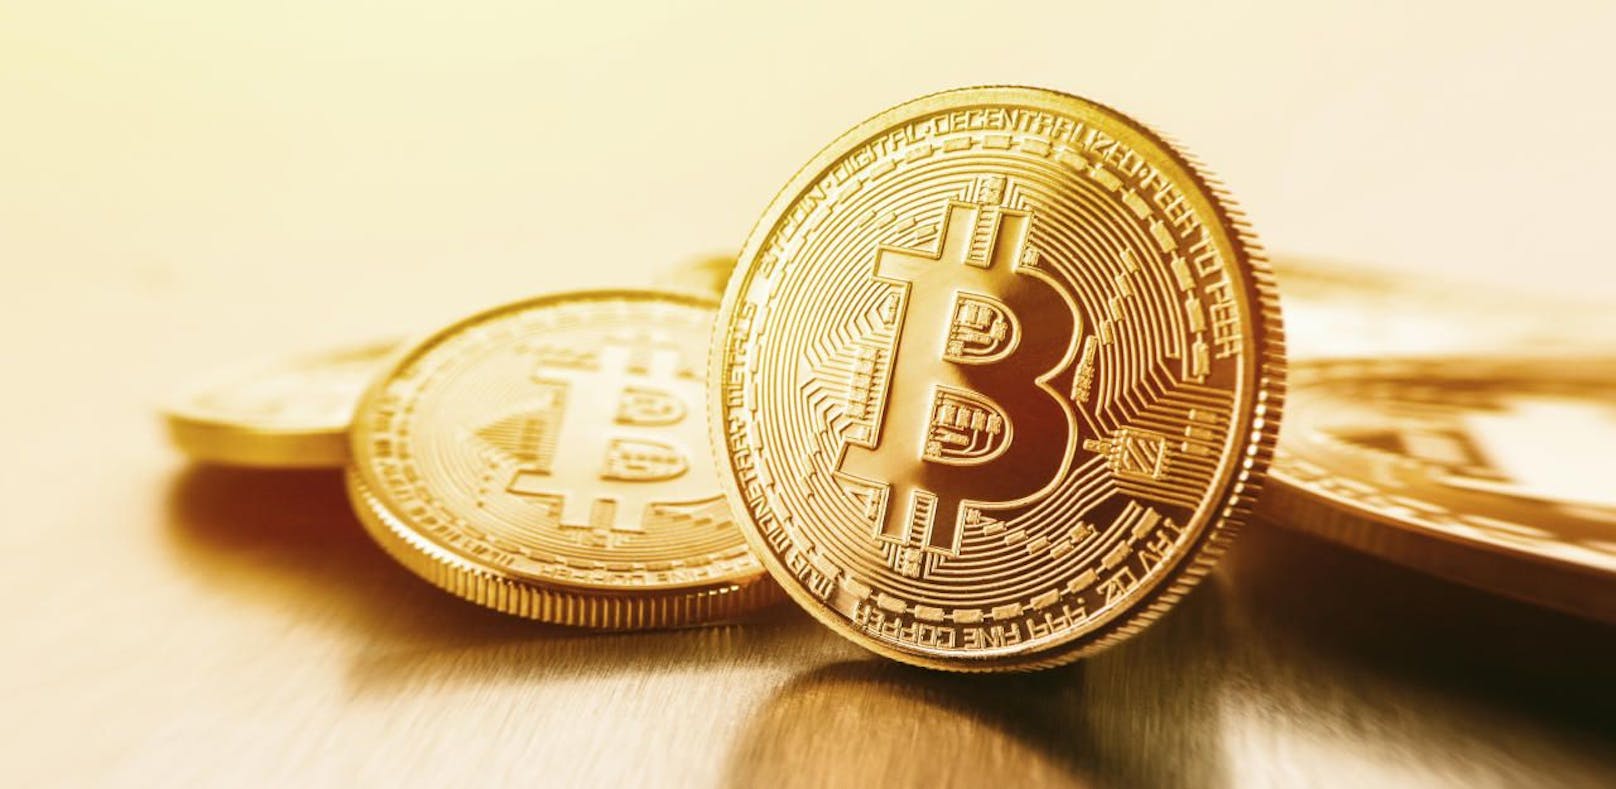 Bitcoin stiegen im Vorjahr um mehr als 300 Prozent.